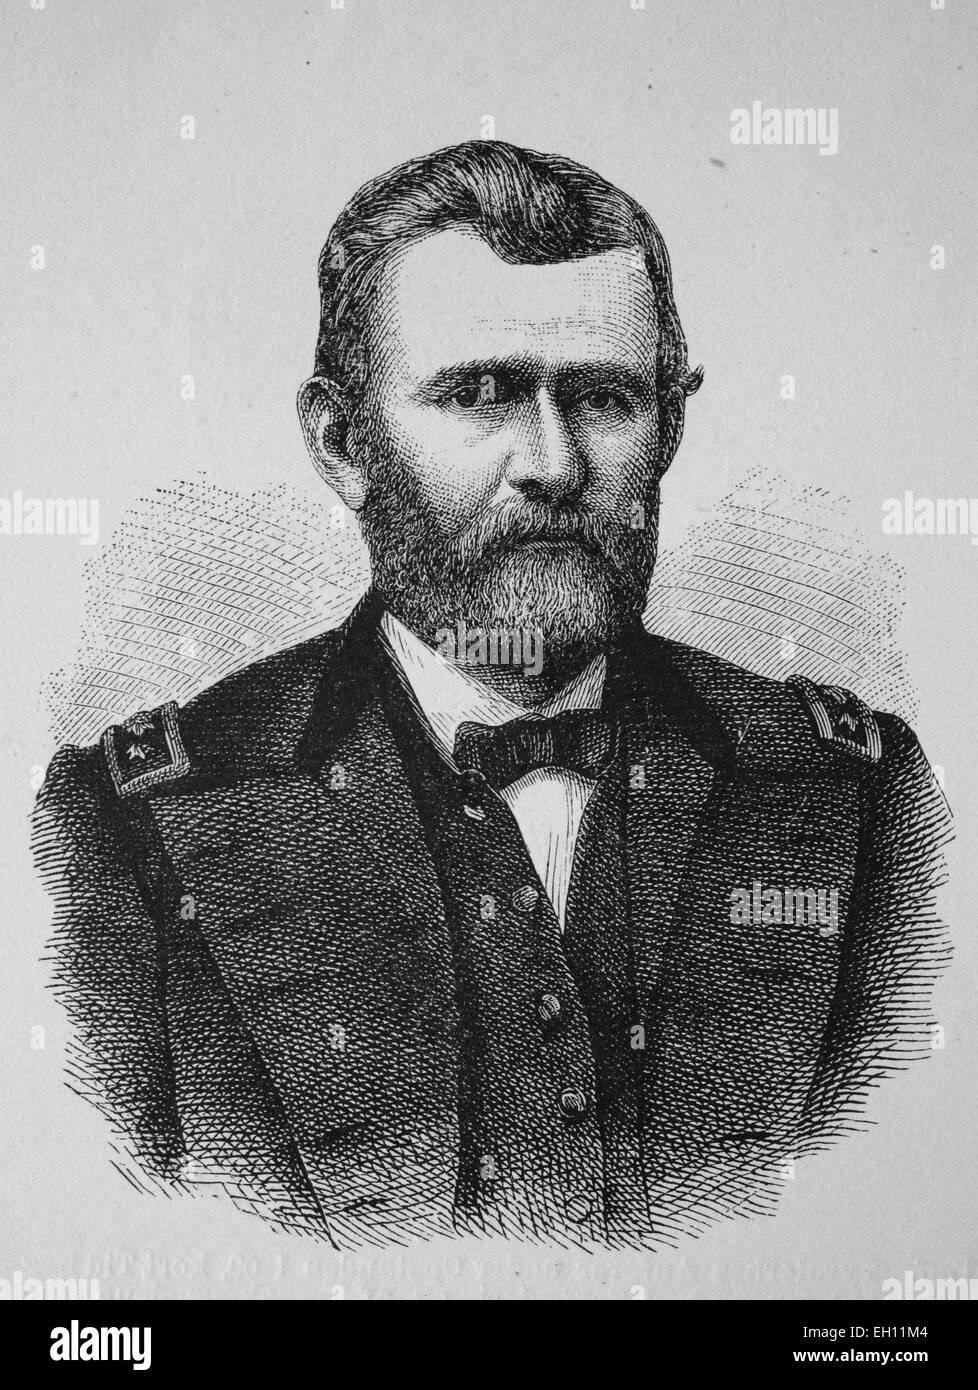 Ulysses S. Grant, 1822 - 1885, 18e président des États-Unis d'Amérique, gravure sur bois, vers 1880 historique Banque D'Images